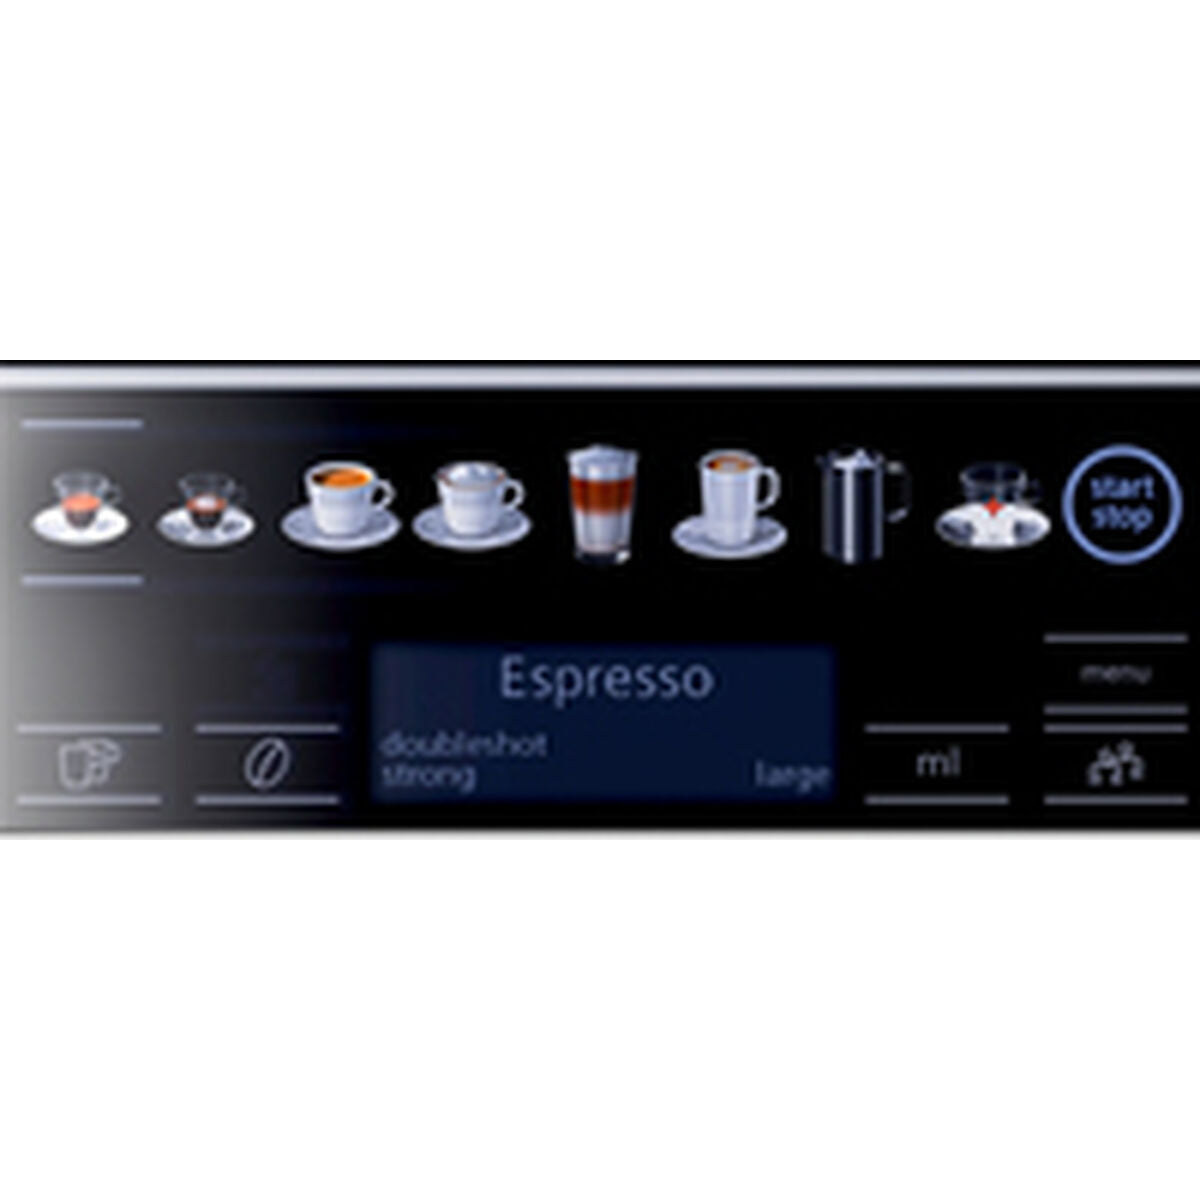 Superautomatische Kaffeemaschine Siemens AG s100 Schwarz 1500 W 15 bar 1,7 L - CA International 